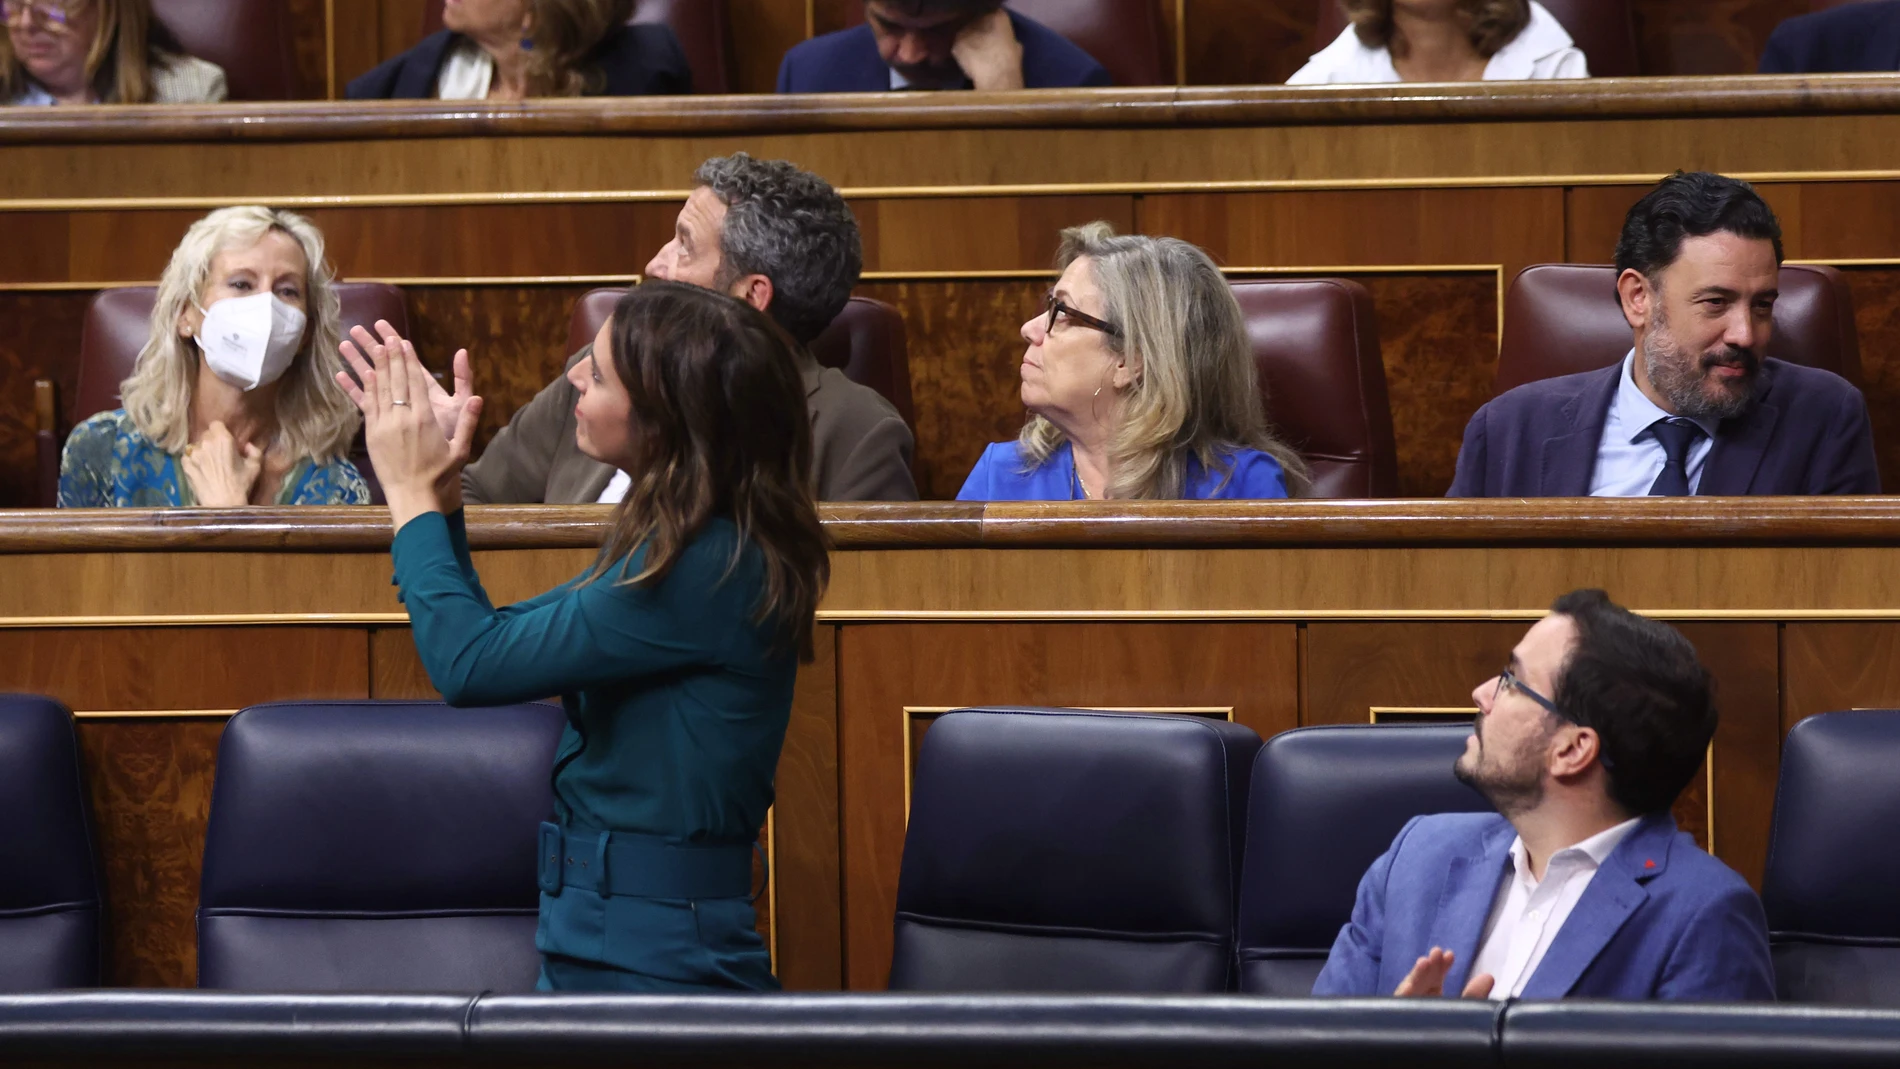 La ministra de Igualdad, Irene Montero y el ministro de Consumo, Alberto Garzón, aplauden durante una sesión plenaria, en el Congreso de los Diputados, a 6 de octubre de 2022, en Madrid